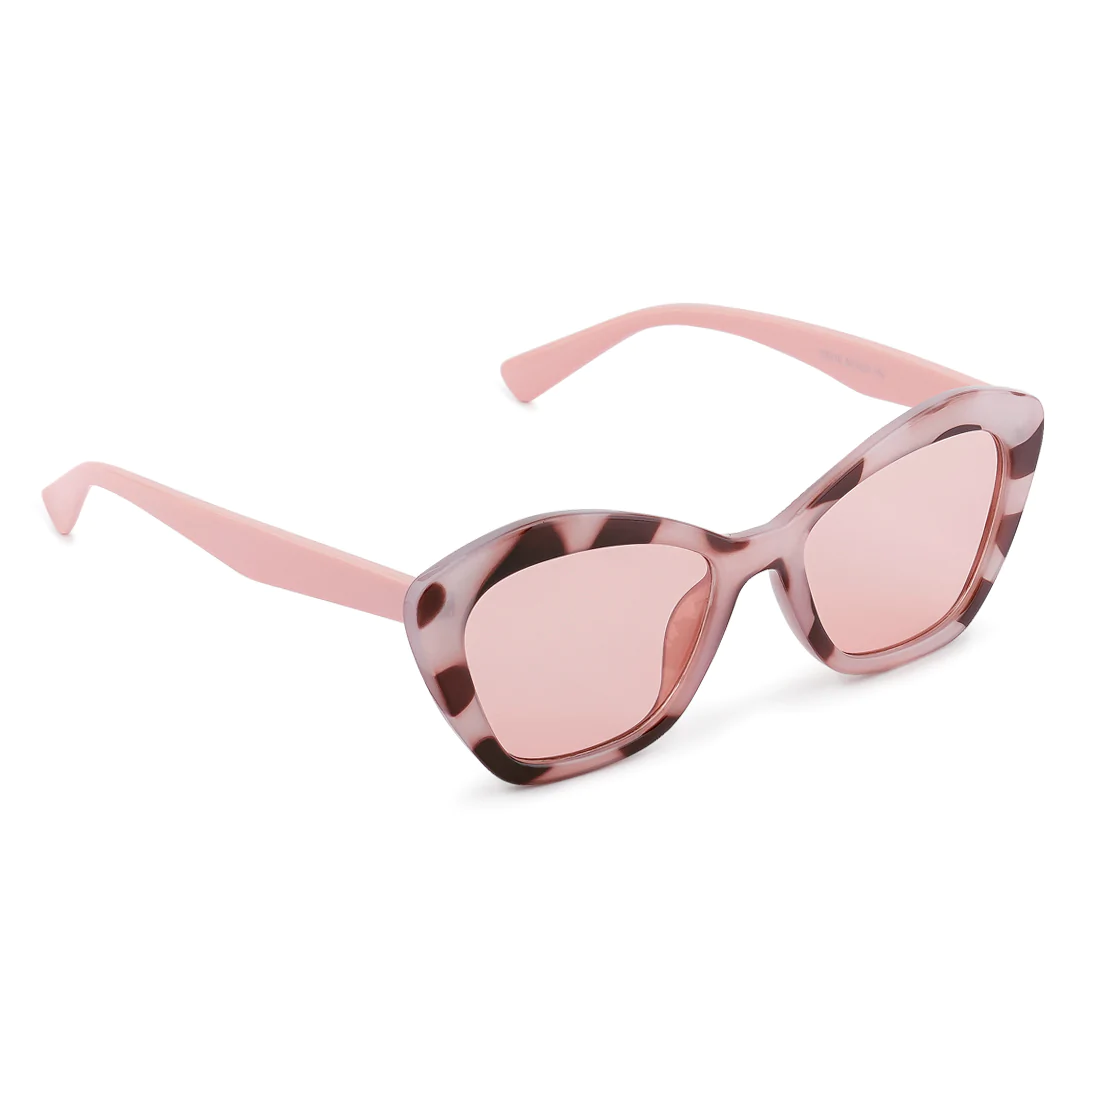 Gafas de sol de marco de marco impreso en rosa